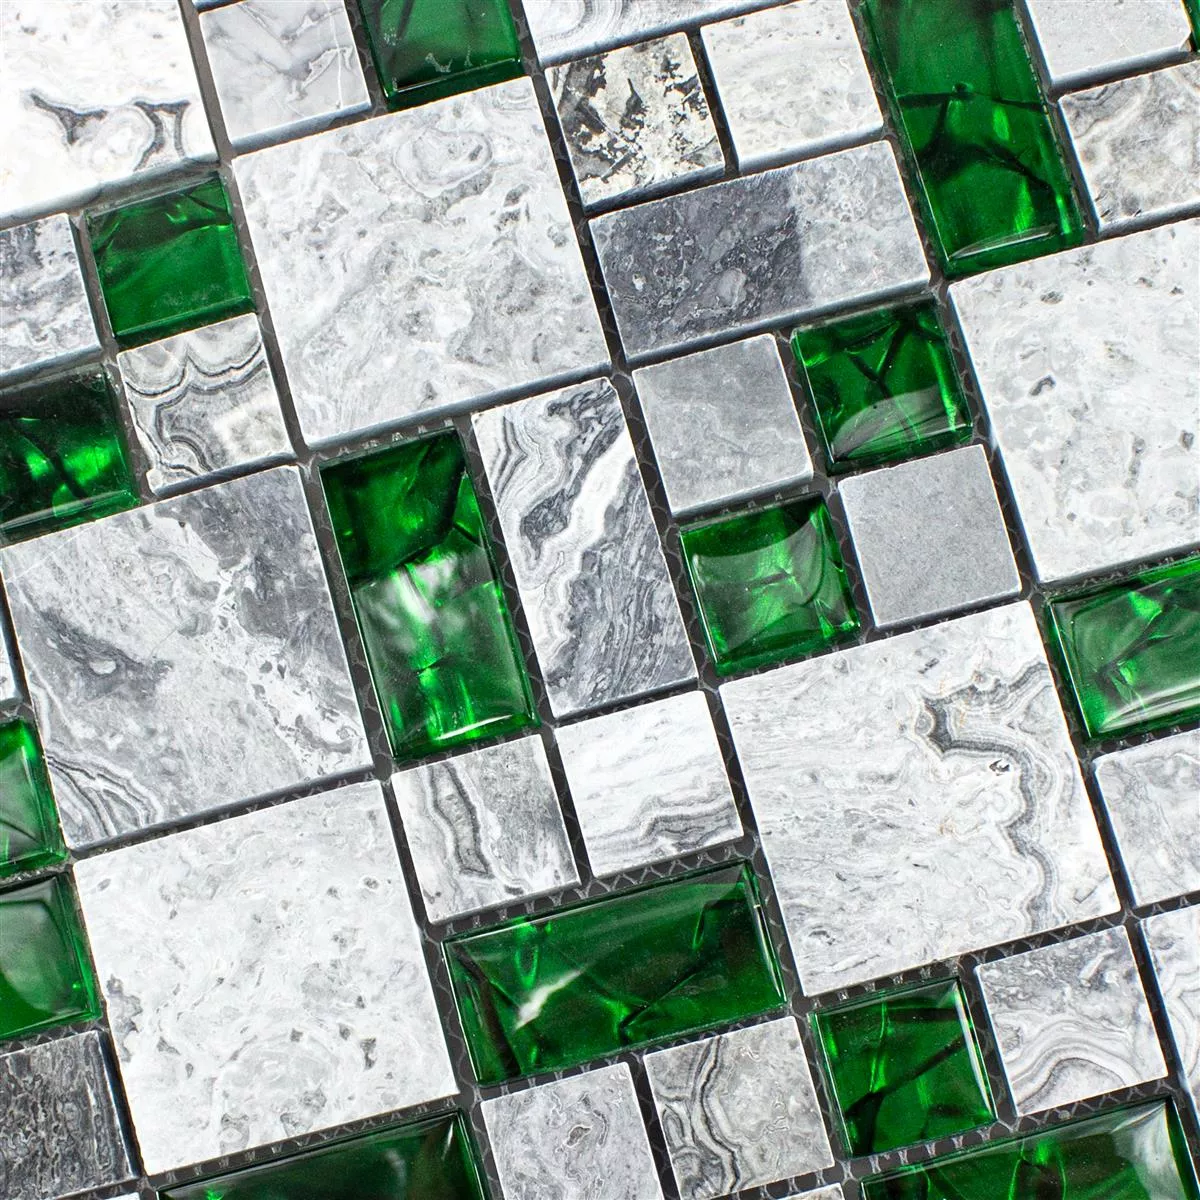 Model din Mozaic Din Piatra Naturala Din Sticla Gresie Sinop Gri Verde 2 Mix